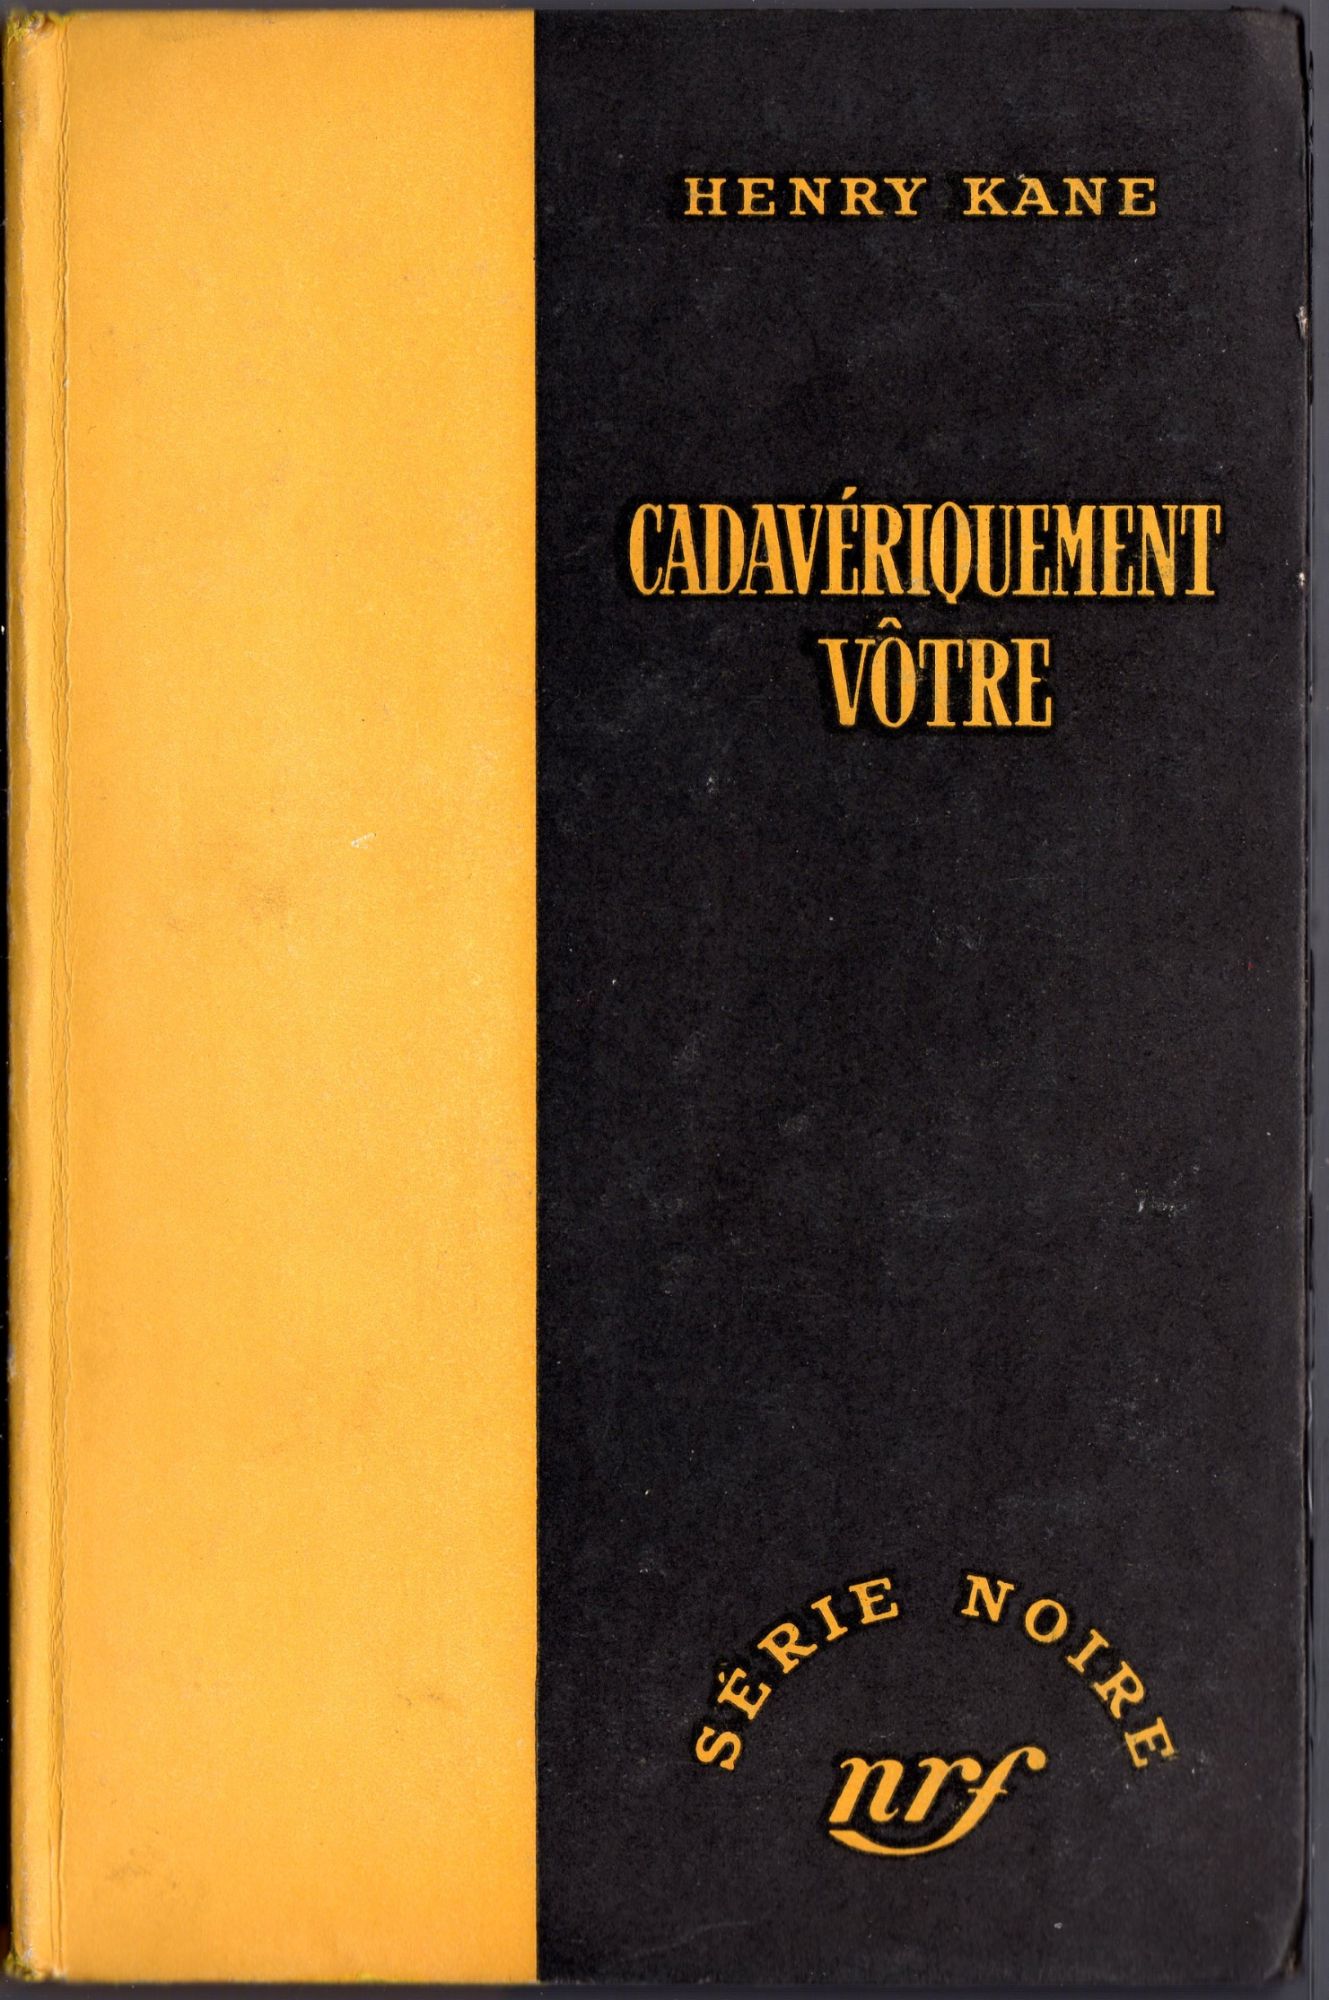 Couverture Cadavriquement vtre Gallimard